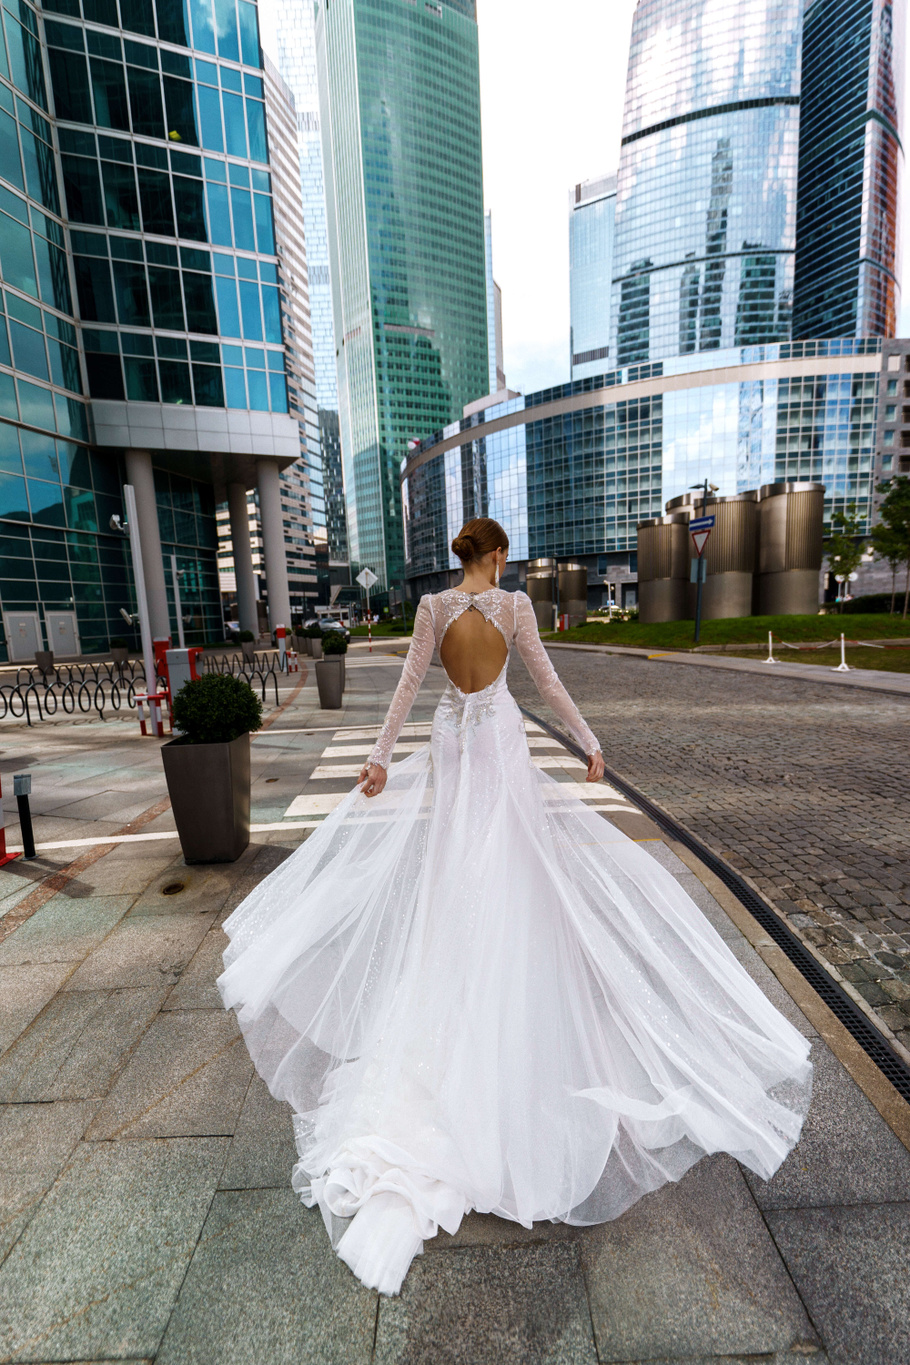 Купить свадебное платье «Нортон» Рара Авис из коллекции О Май Брайд 2021 года в интернет-магазине